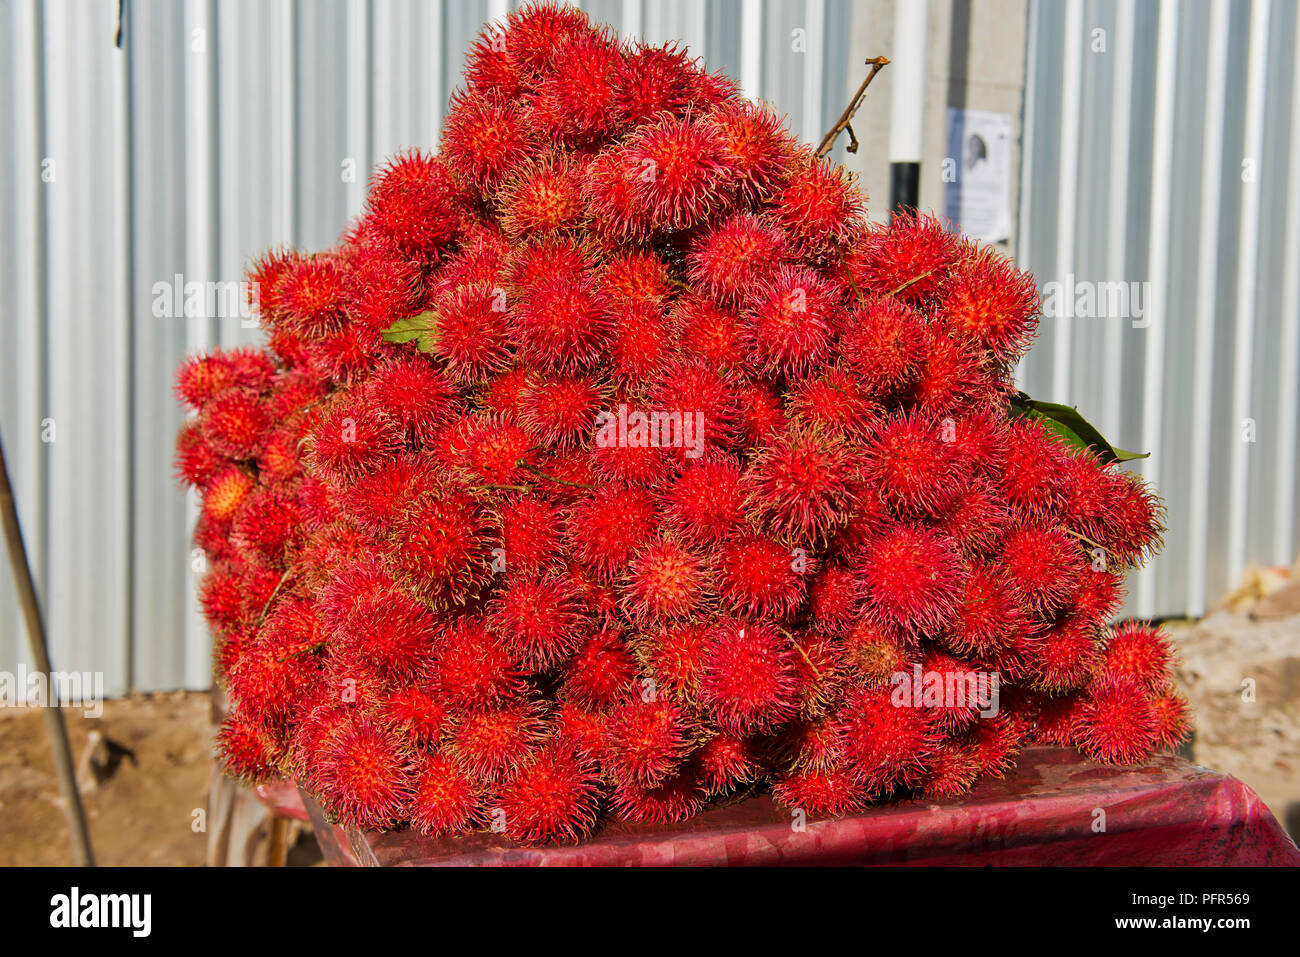 Sri Lanka, en la provincia occidental, Colombo, Ja-Ela, montón de rambutan fruto Foto de stock